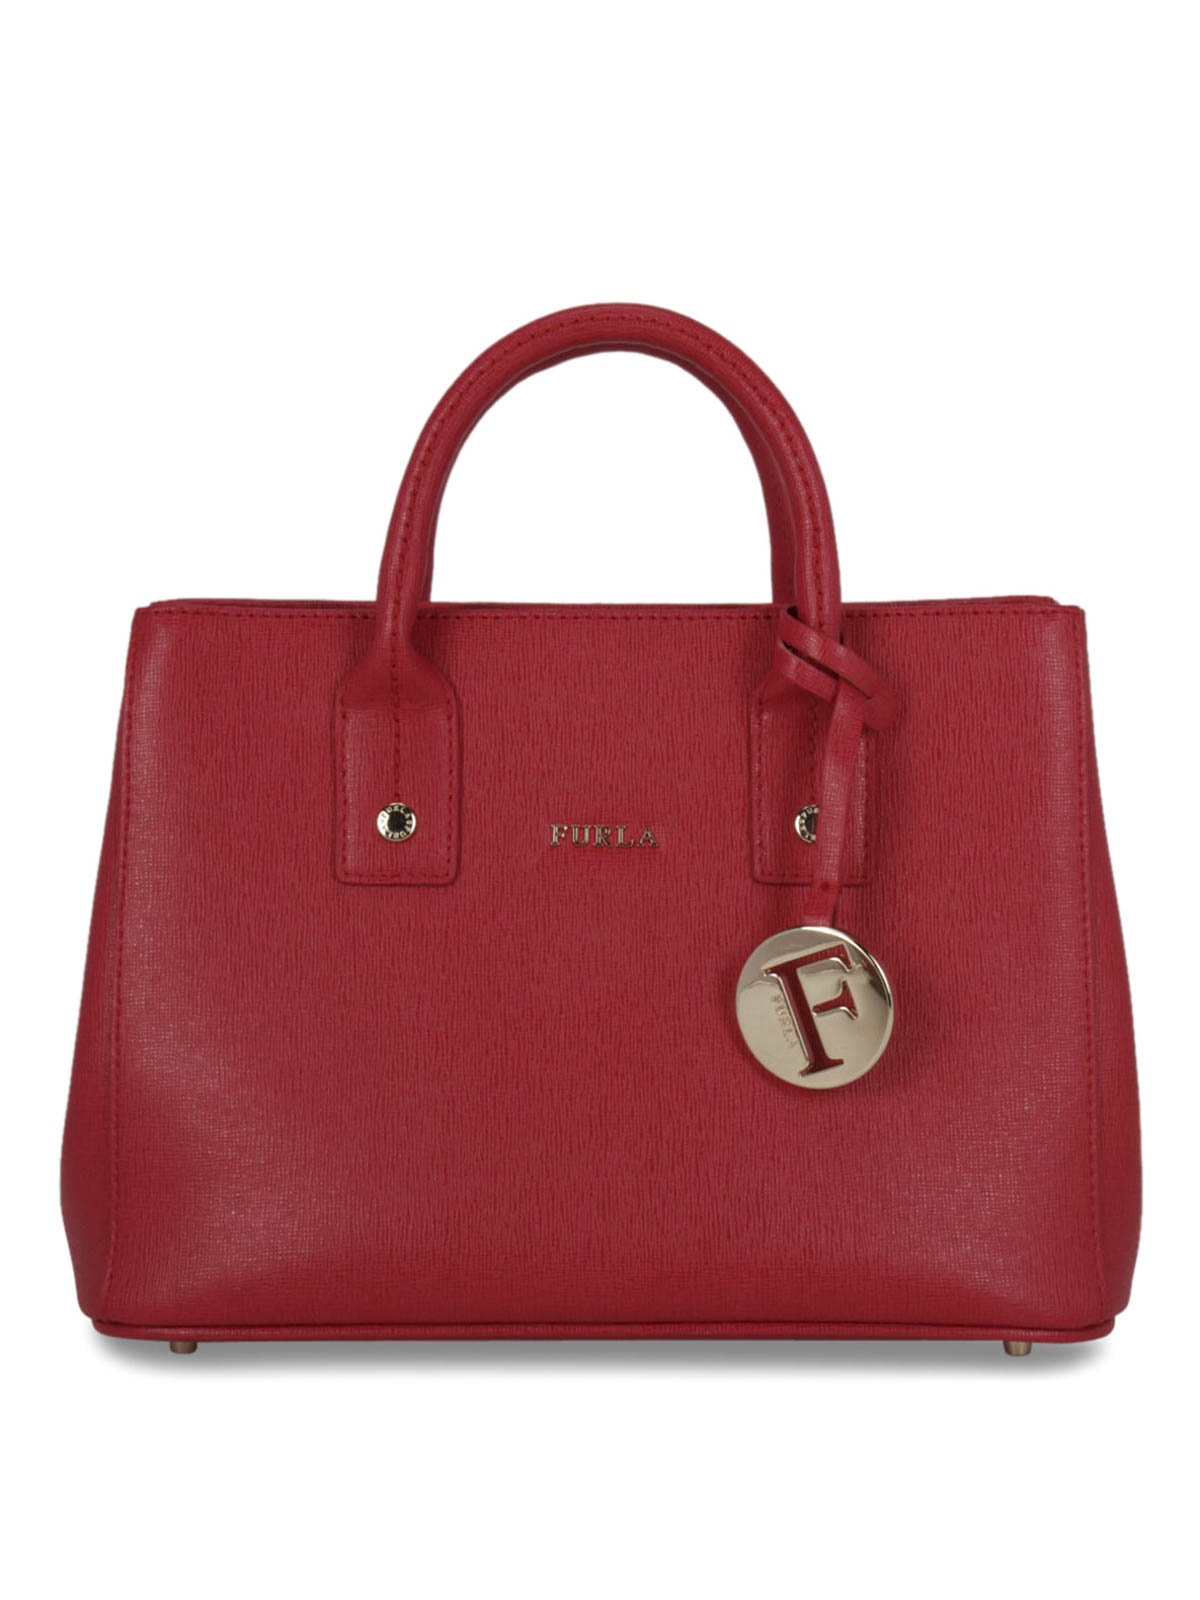 Furla - Linda saffiano leather mini bag - totes bags - BHR7RUBY